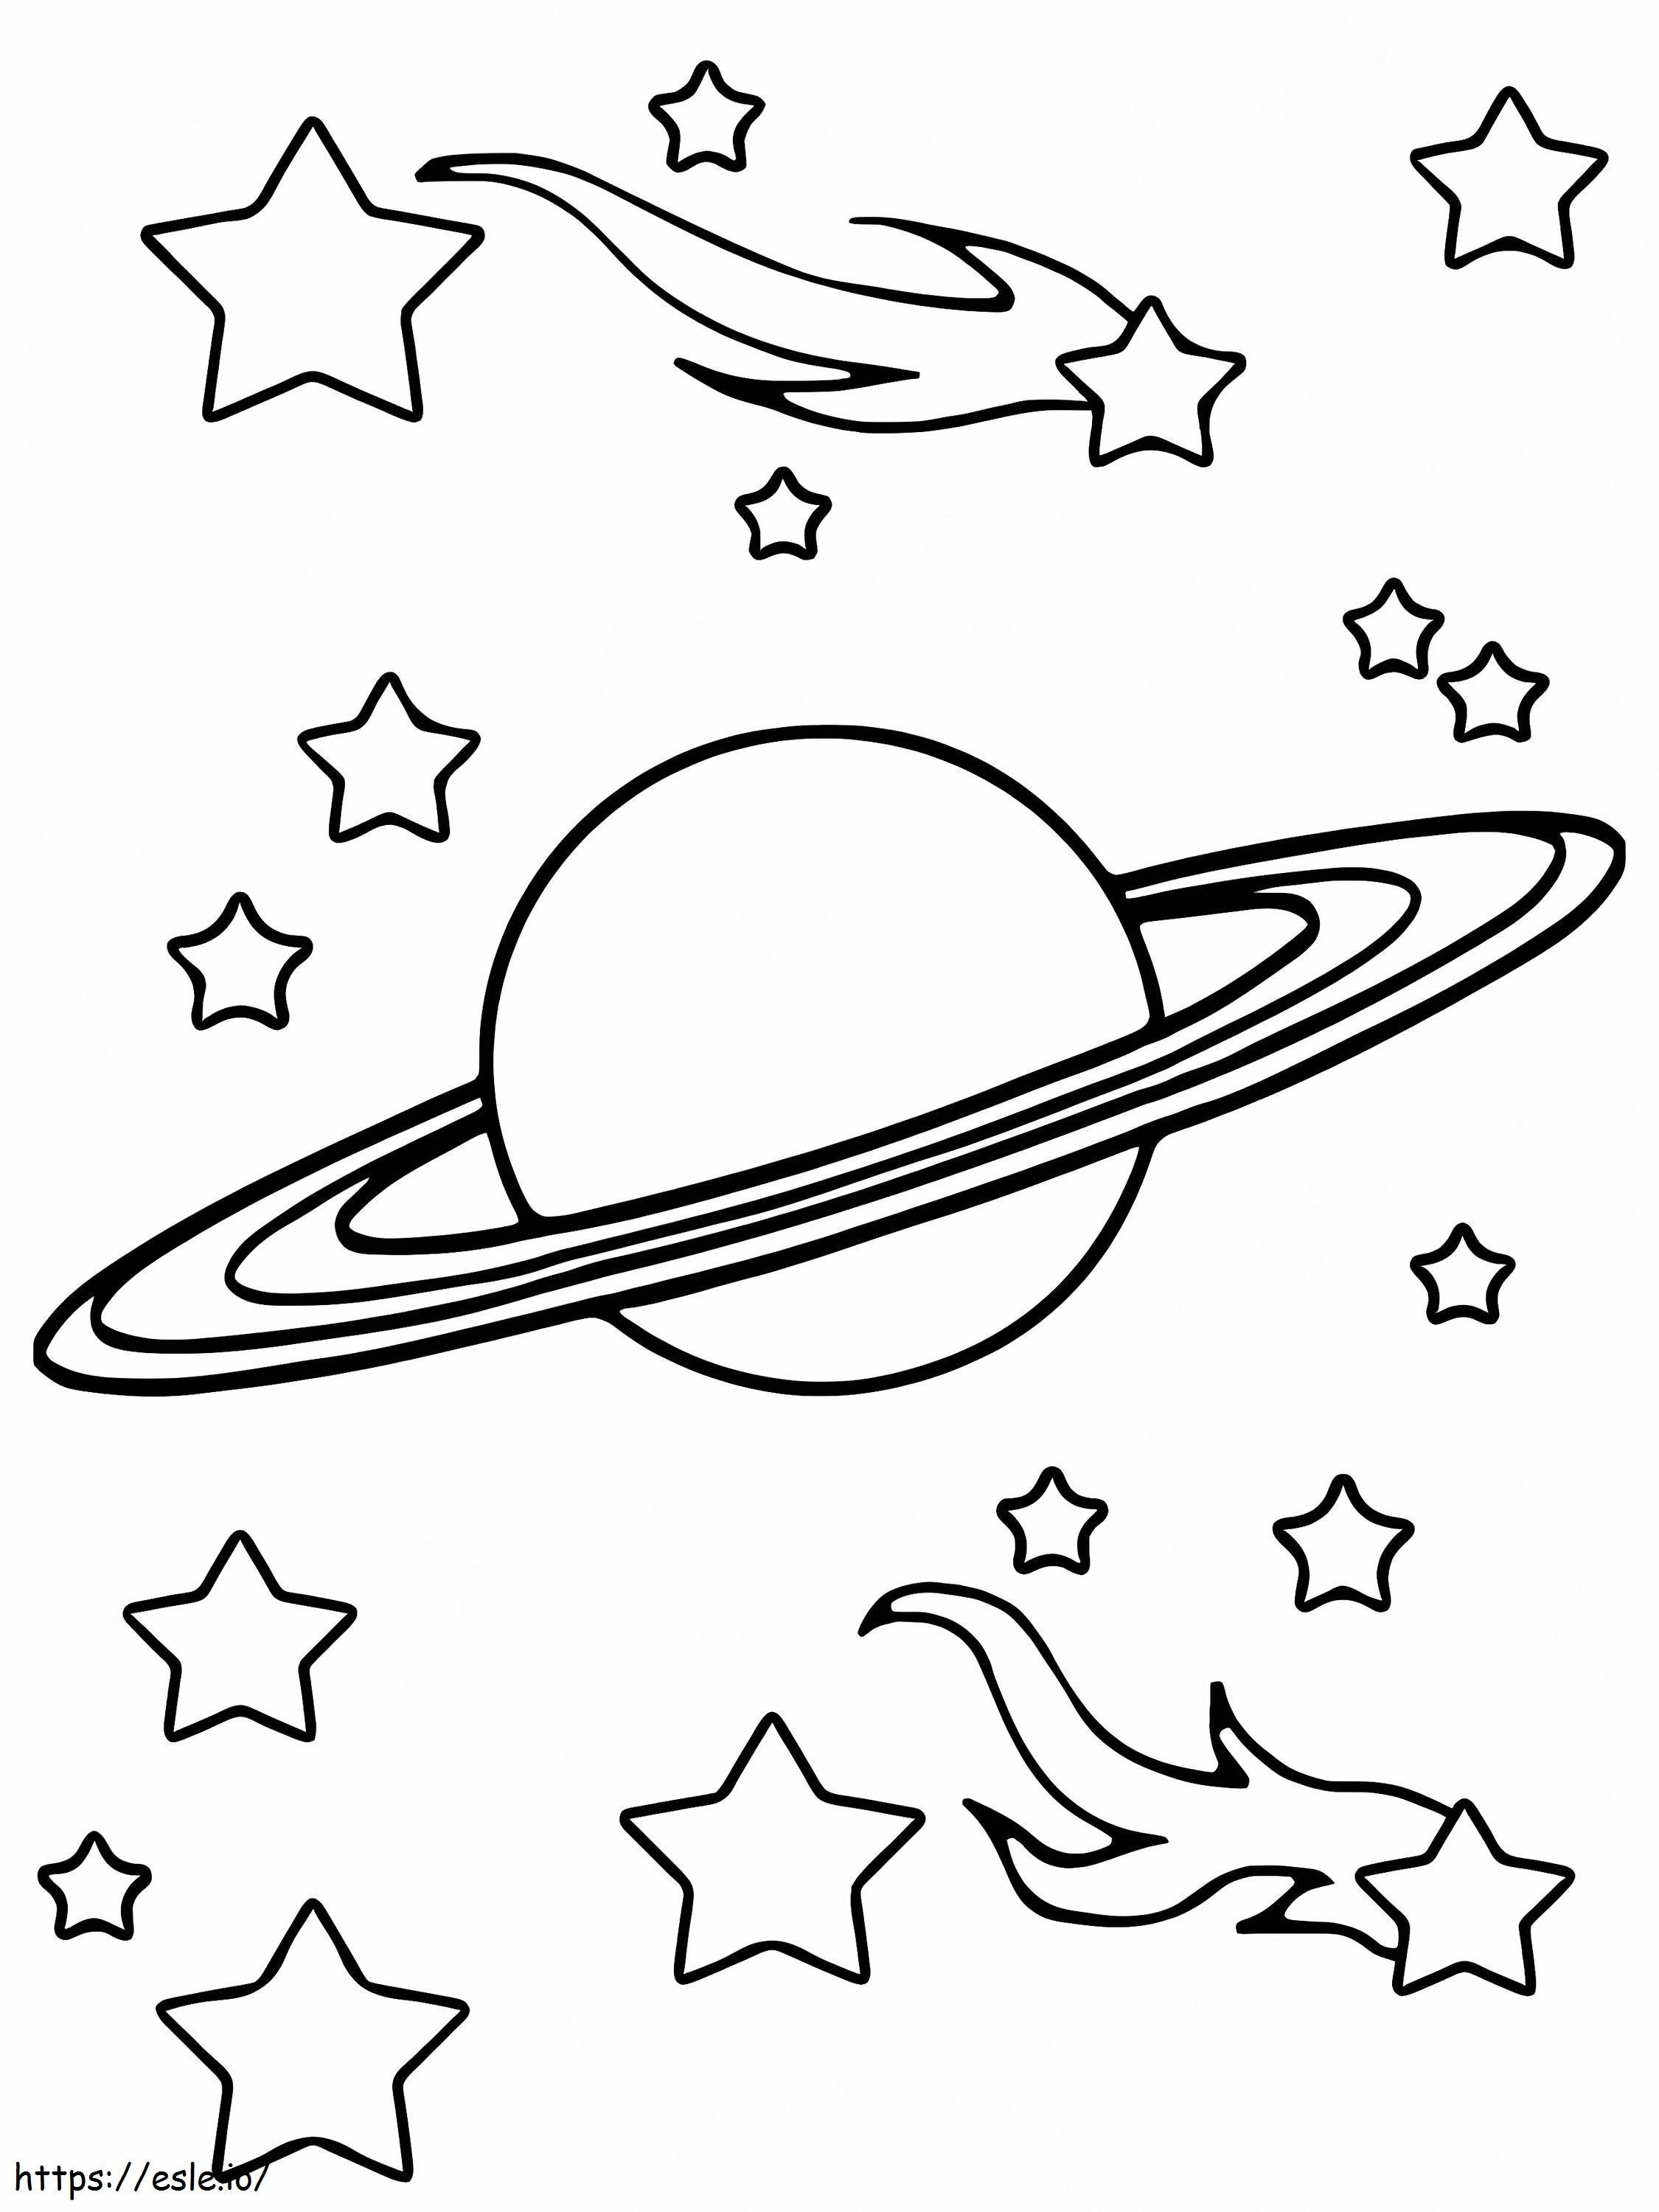 Saturno no espaço para colorir